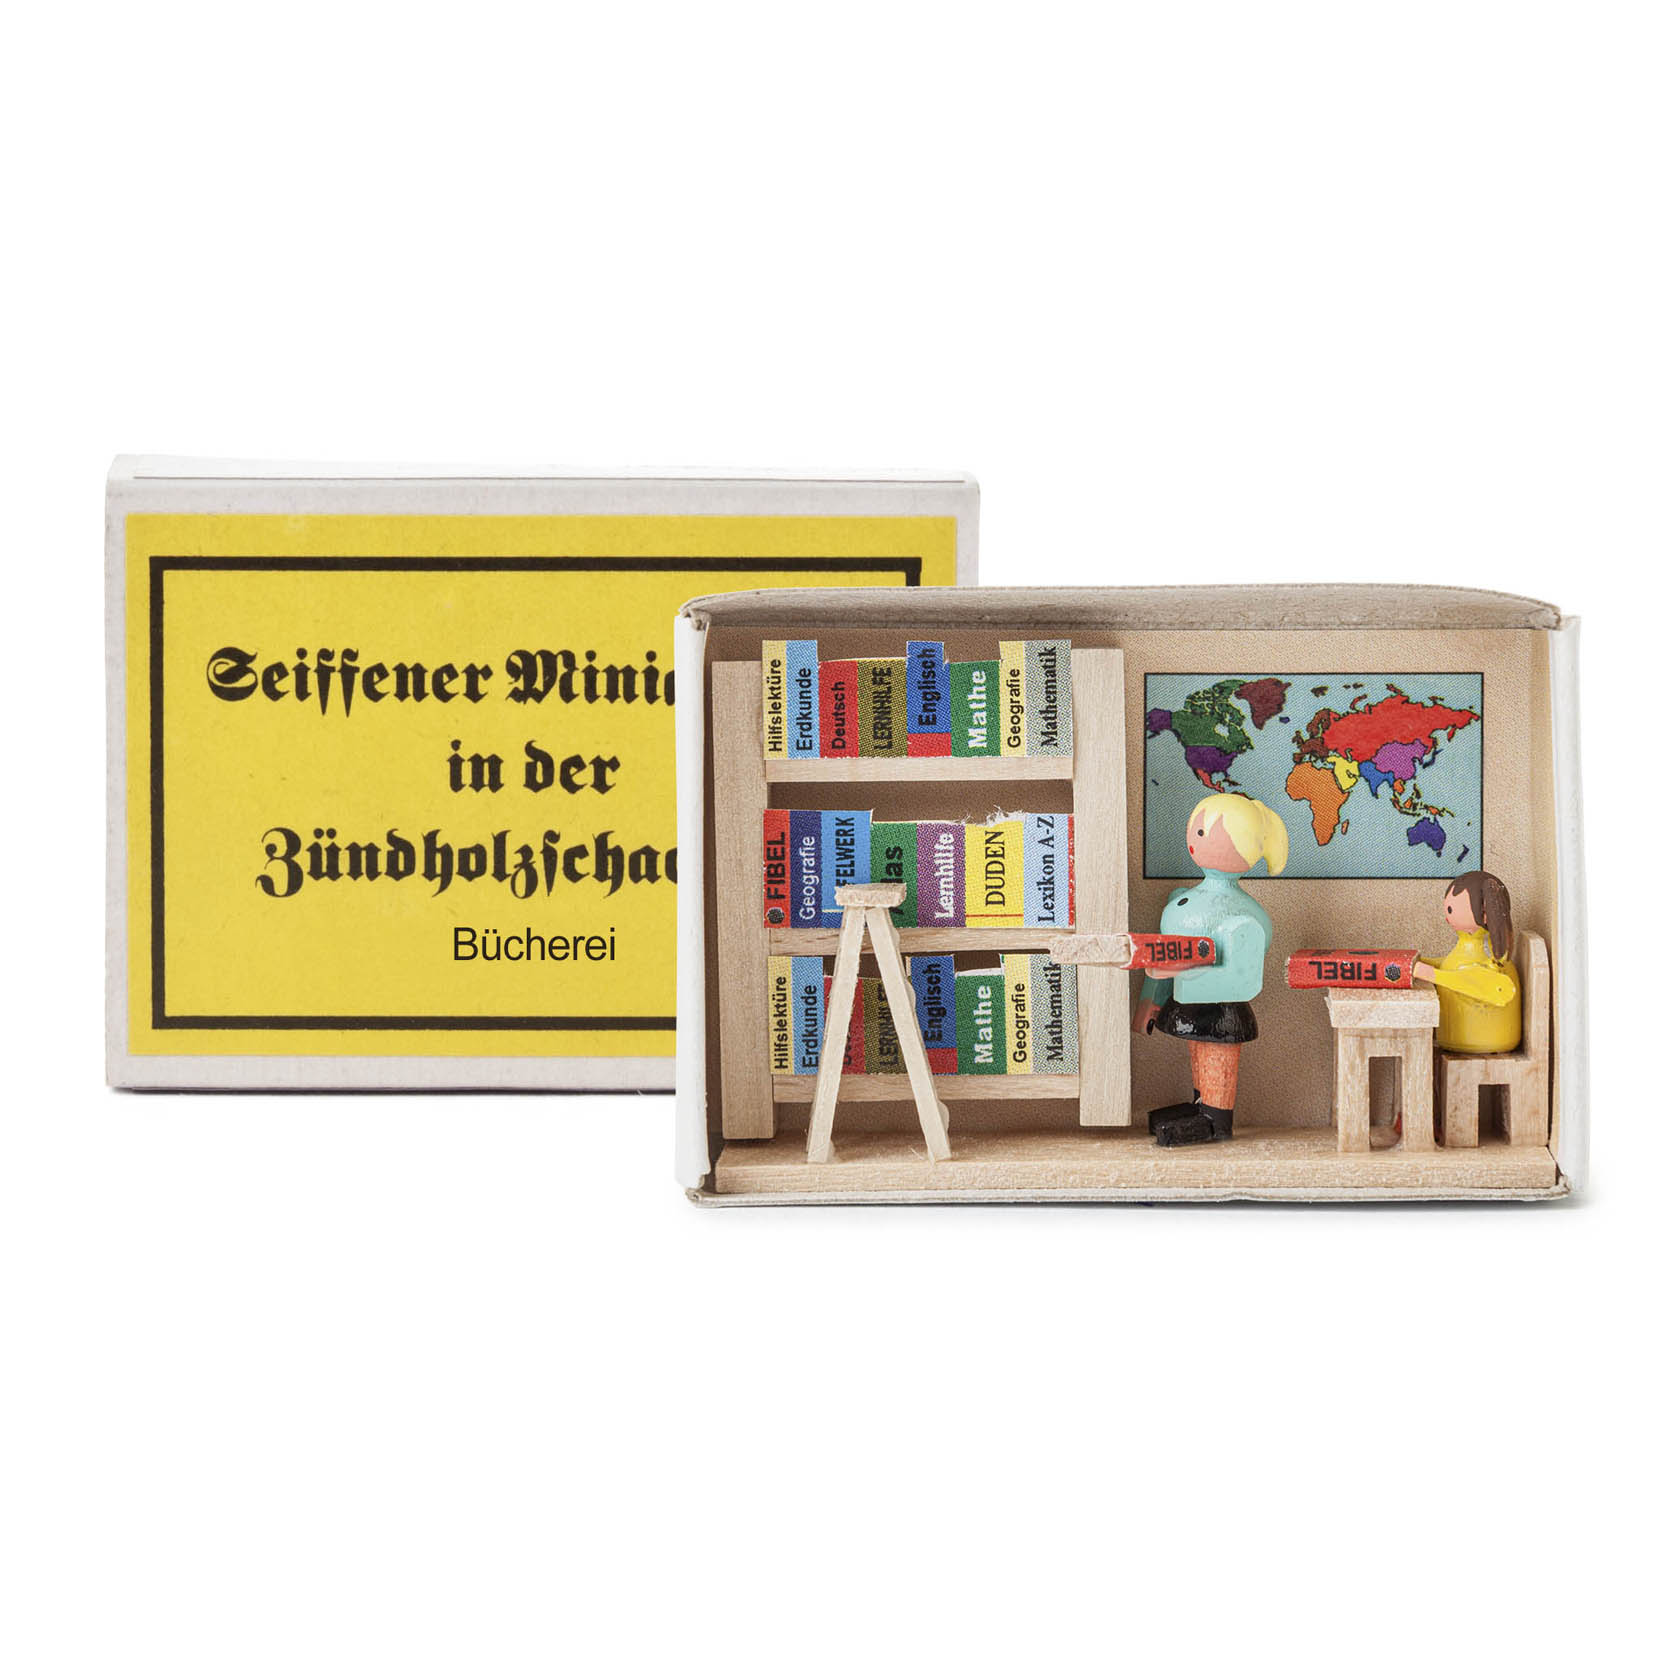 Zündholzschachtel Bücherei im Dregeno Online Shop günstig kaufen